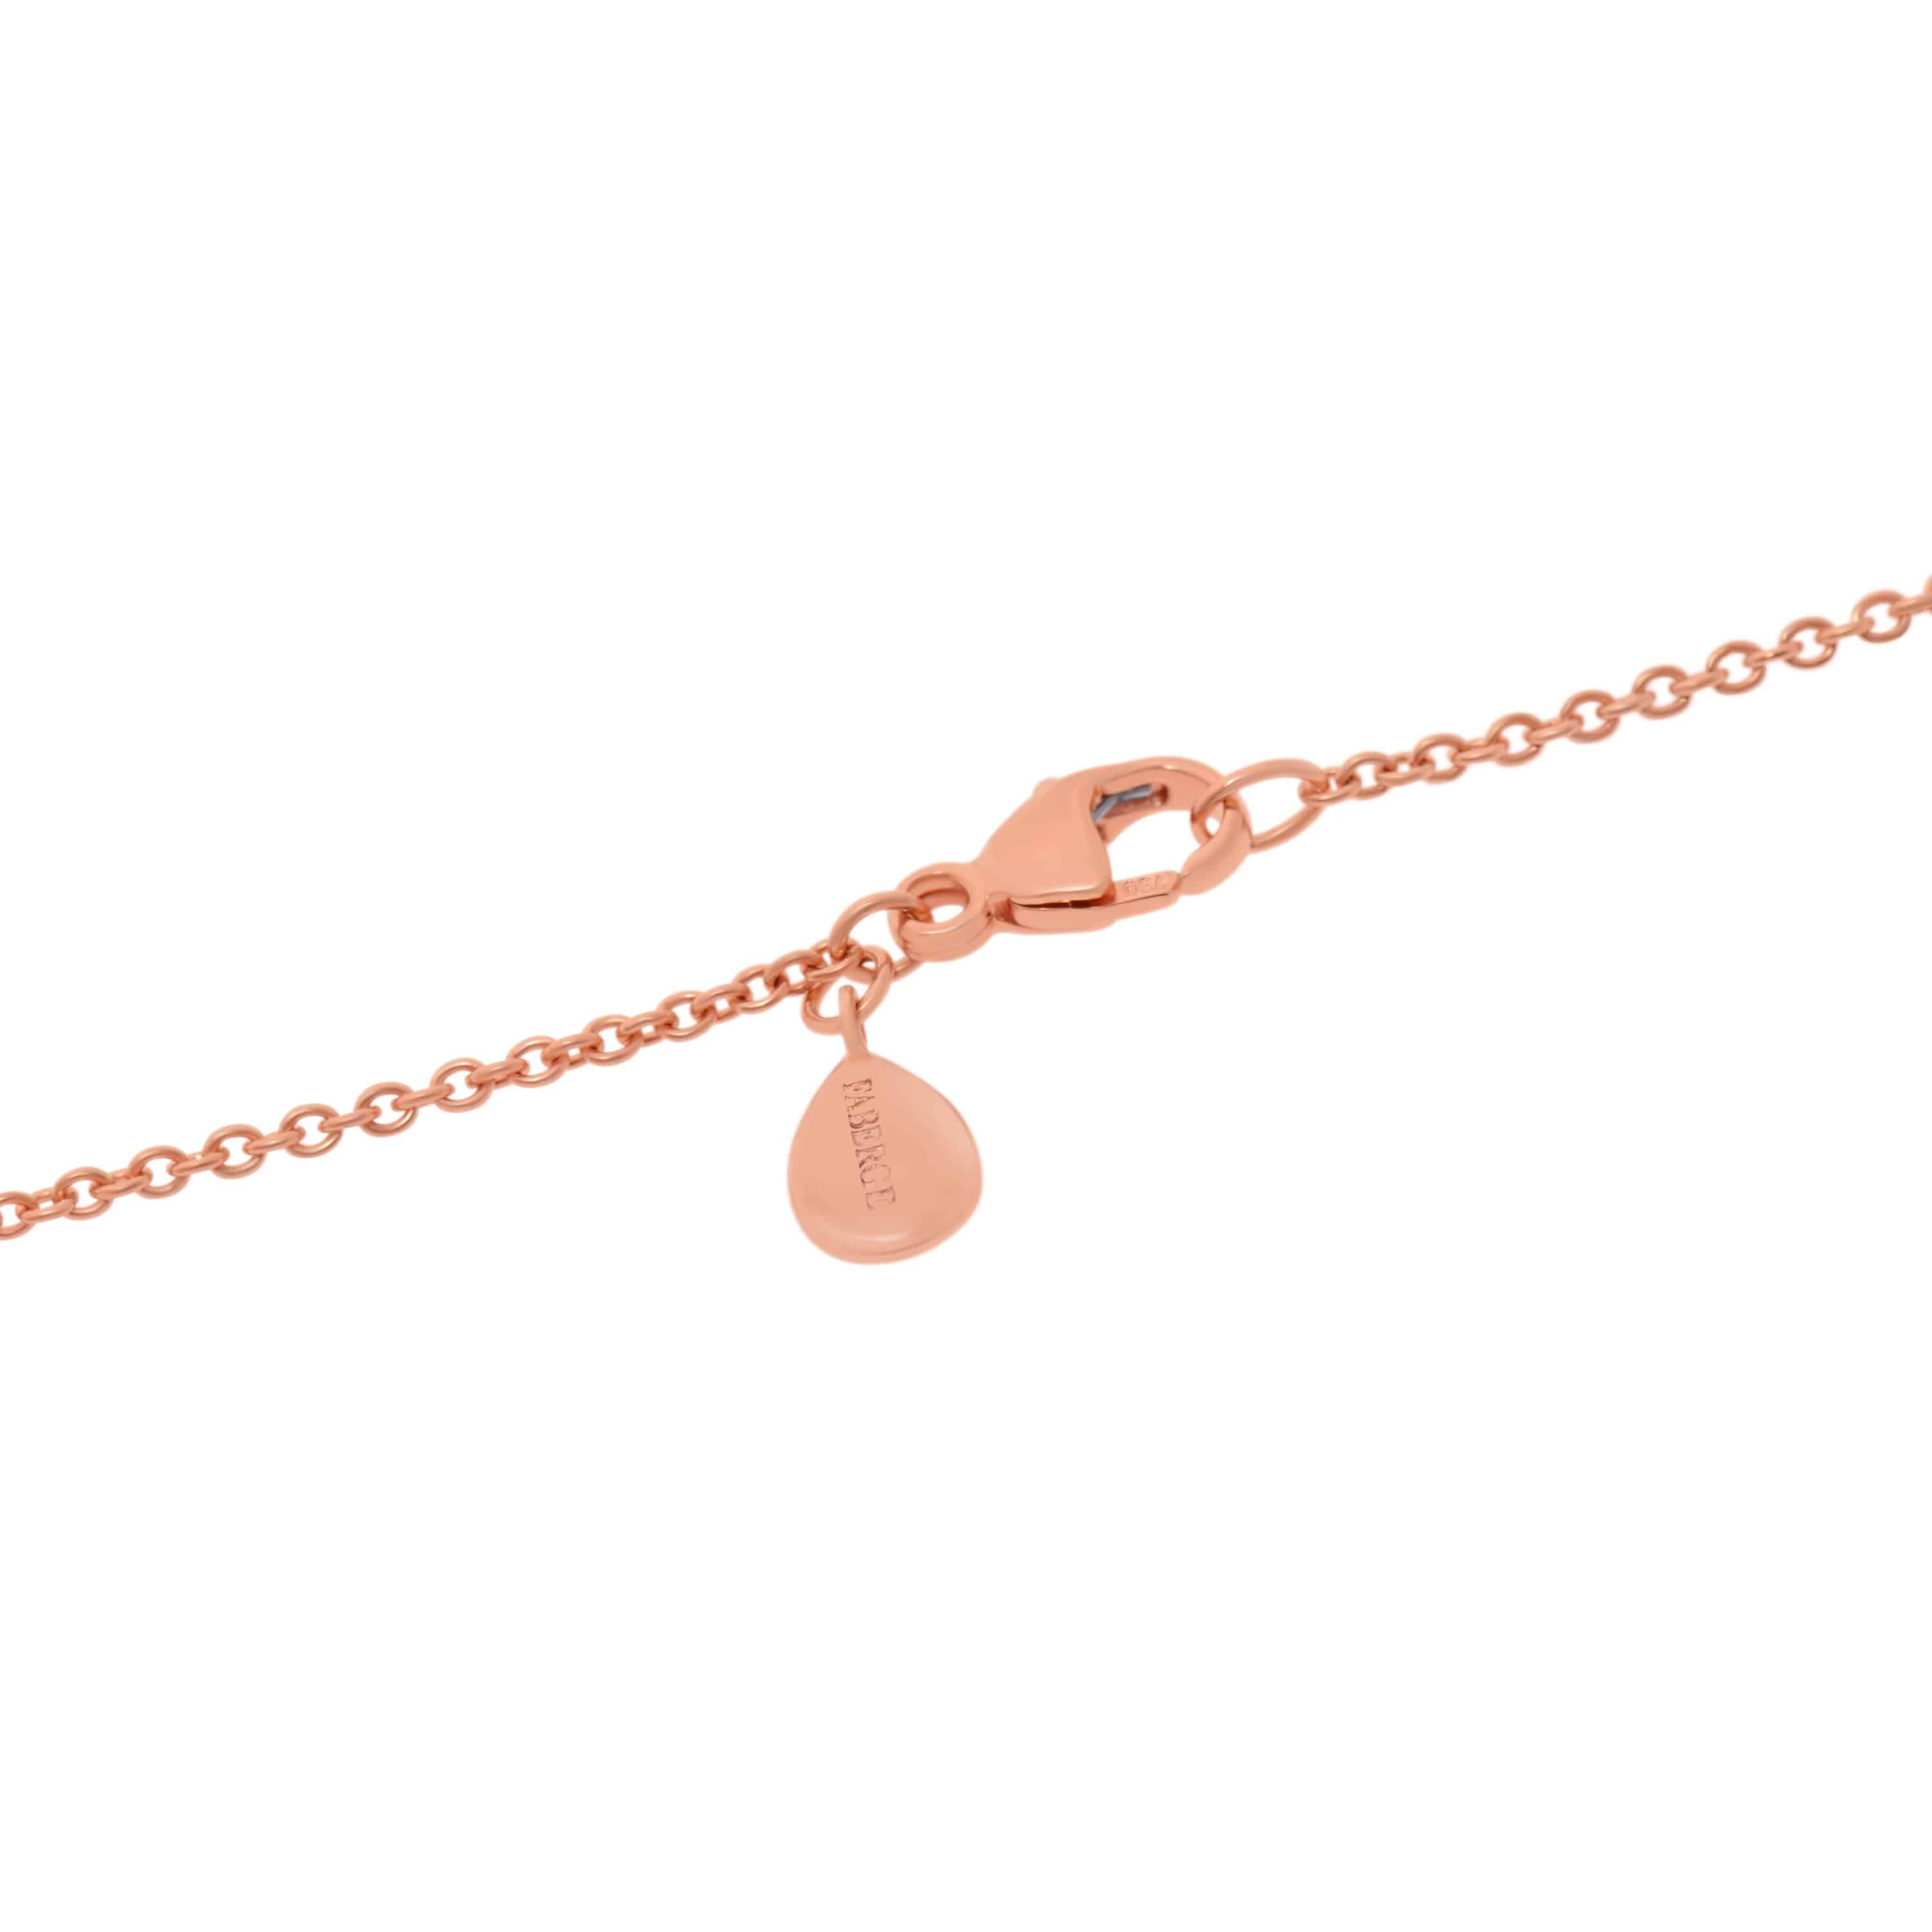 Fabergé Essence 18K Rose Gold and Neon Orange Lacquer Pendant Necklace 1818FP3106/1P - ShopWorn